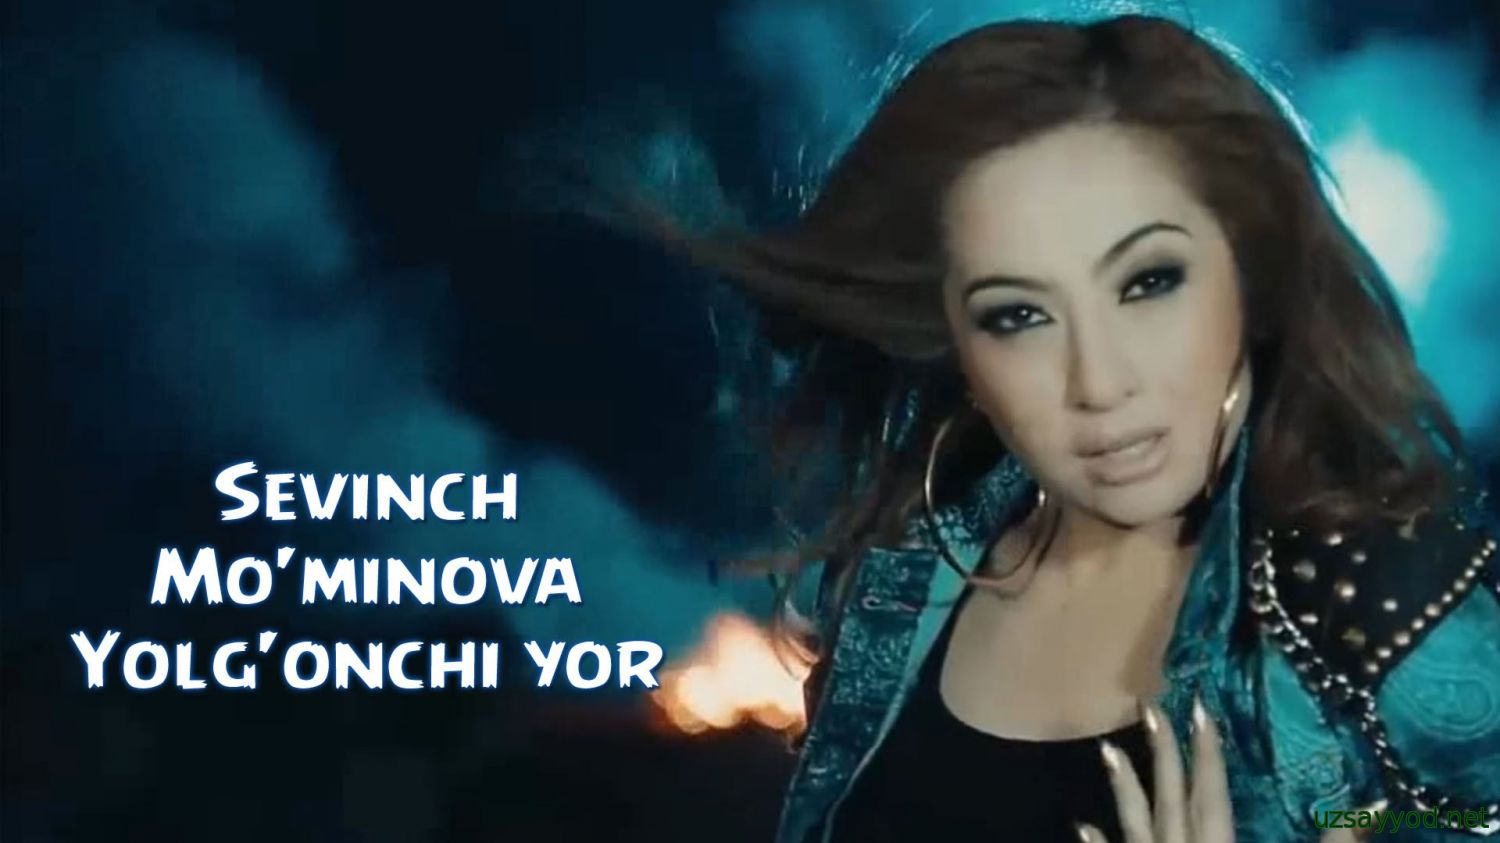 Sevinch Mo'minova - Yolg'onchi yor